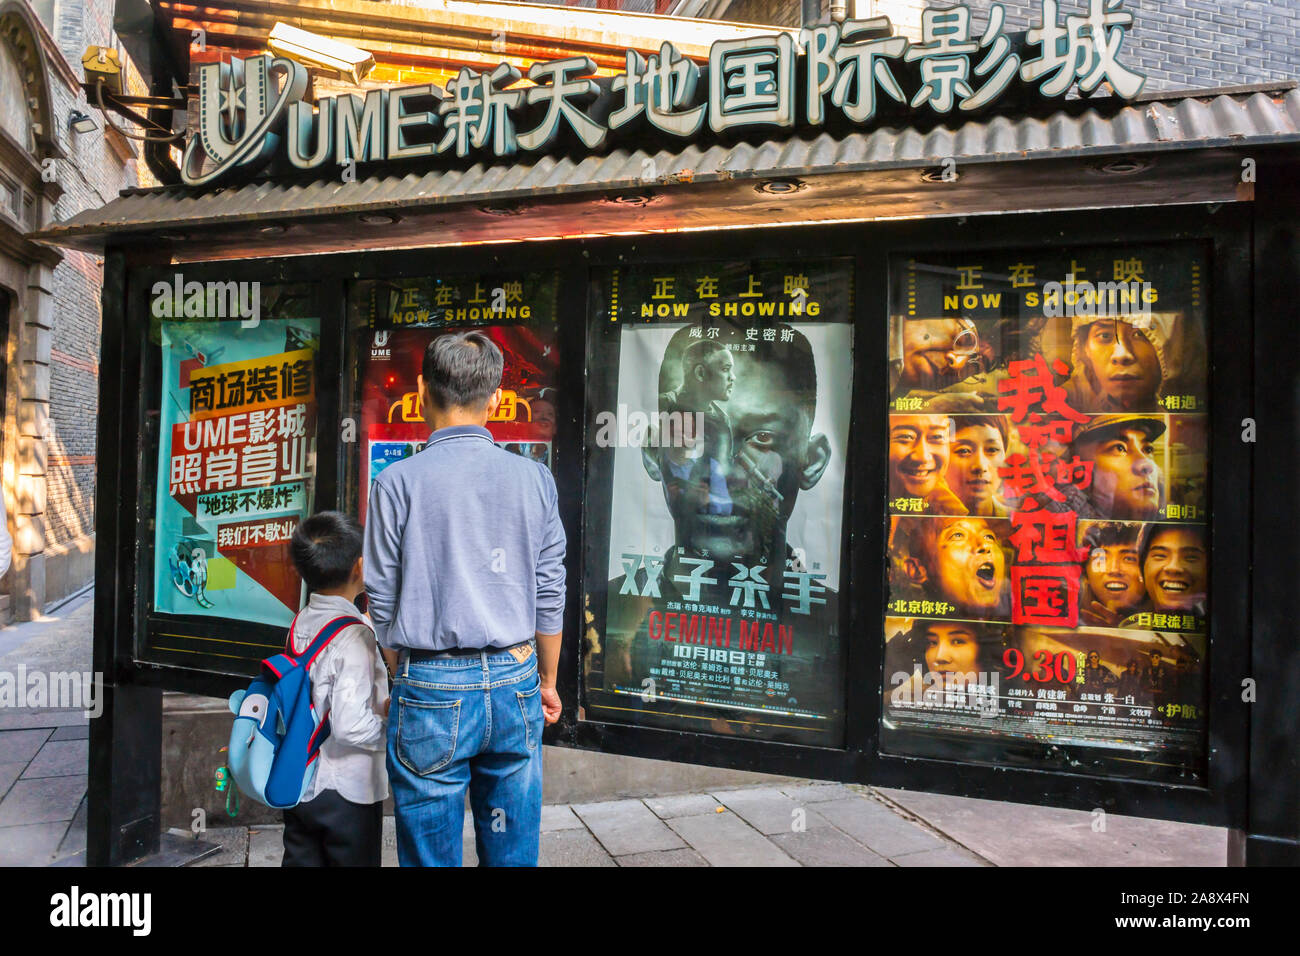 Shanghai, Chine, Père et fils Reading Cinema Movie Theater Exterior Marquee Movie Posters, sur le mur, scènes de rue, centre-ville, affiches de cinéma, film chinois, homme arrière, affiches de film signe de film Banque D'Images